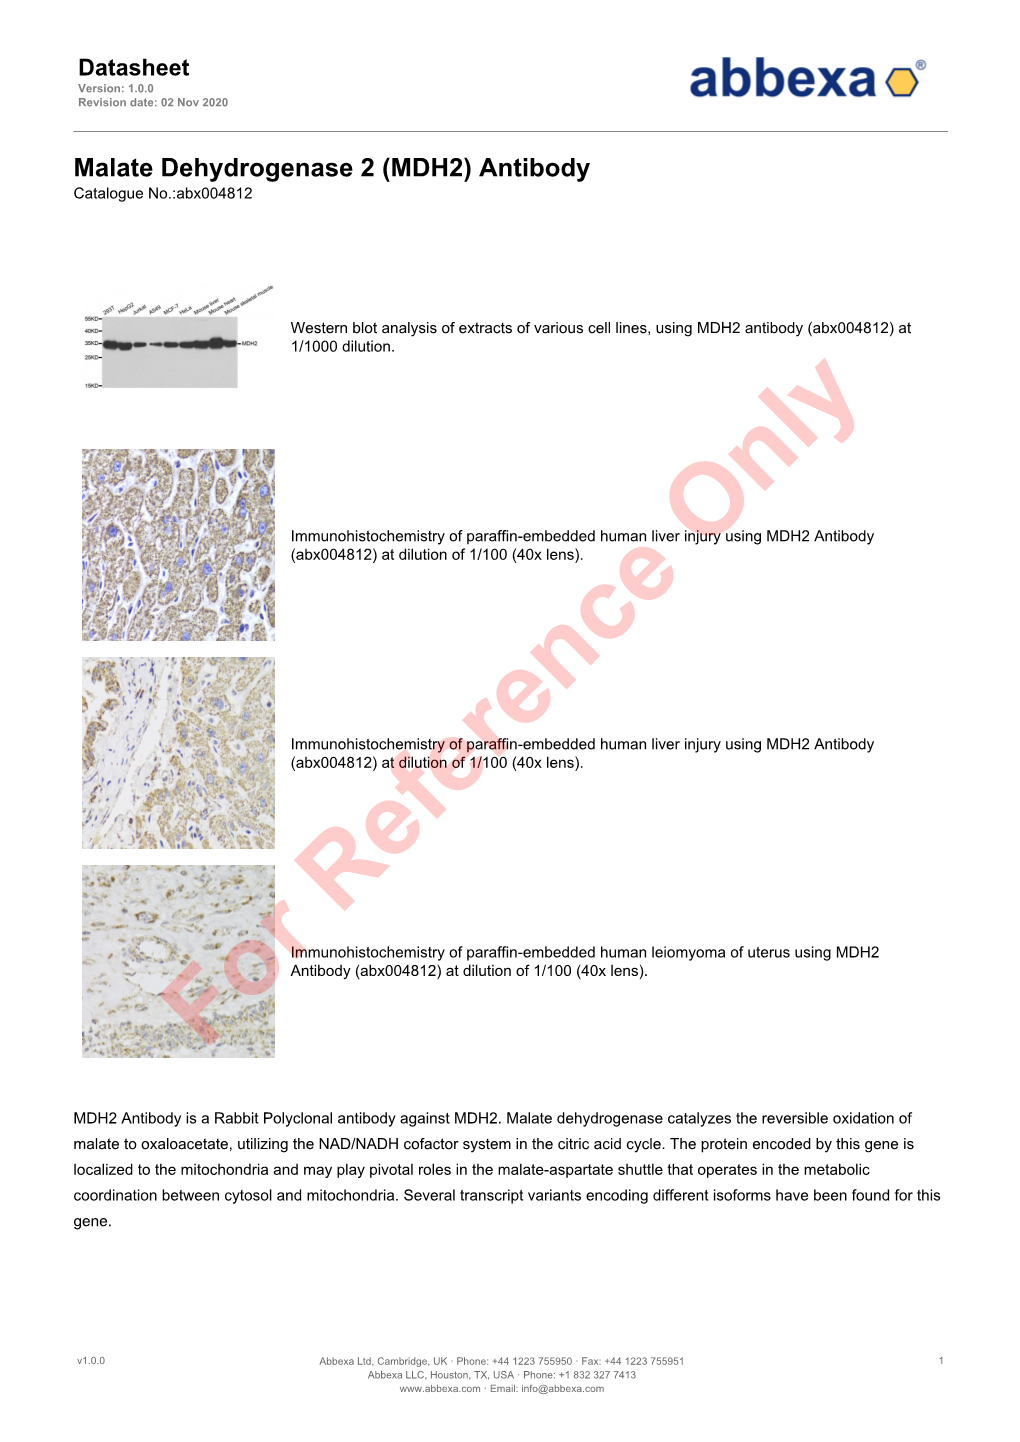 Malate Dehydrogenase 2 (MDH2) Antibody Catalogue No.:Abx004812